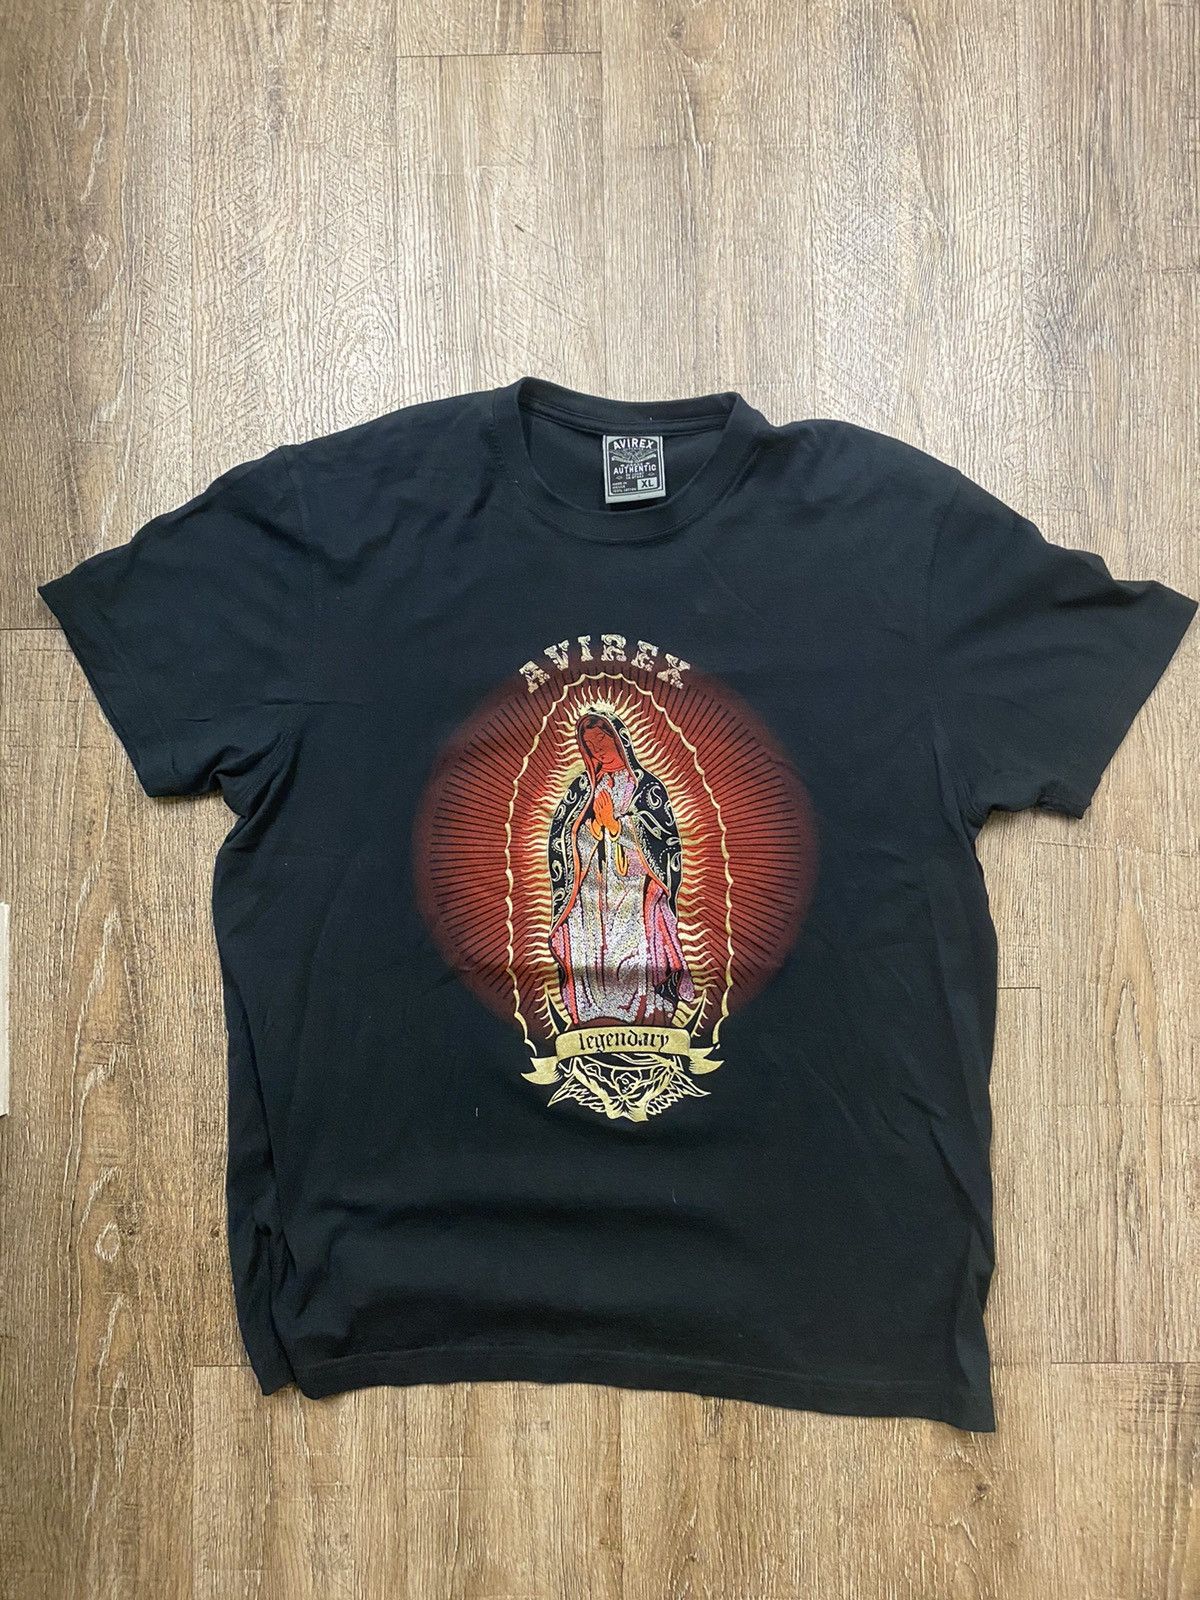 Avirex Avirex Virgin Mary t shirt | Grailed